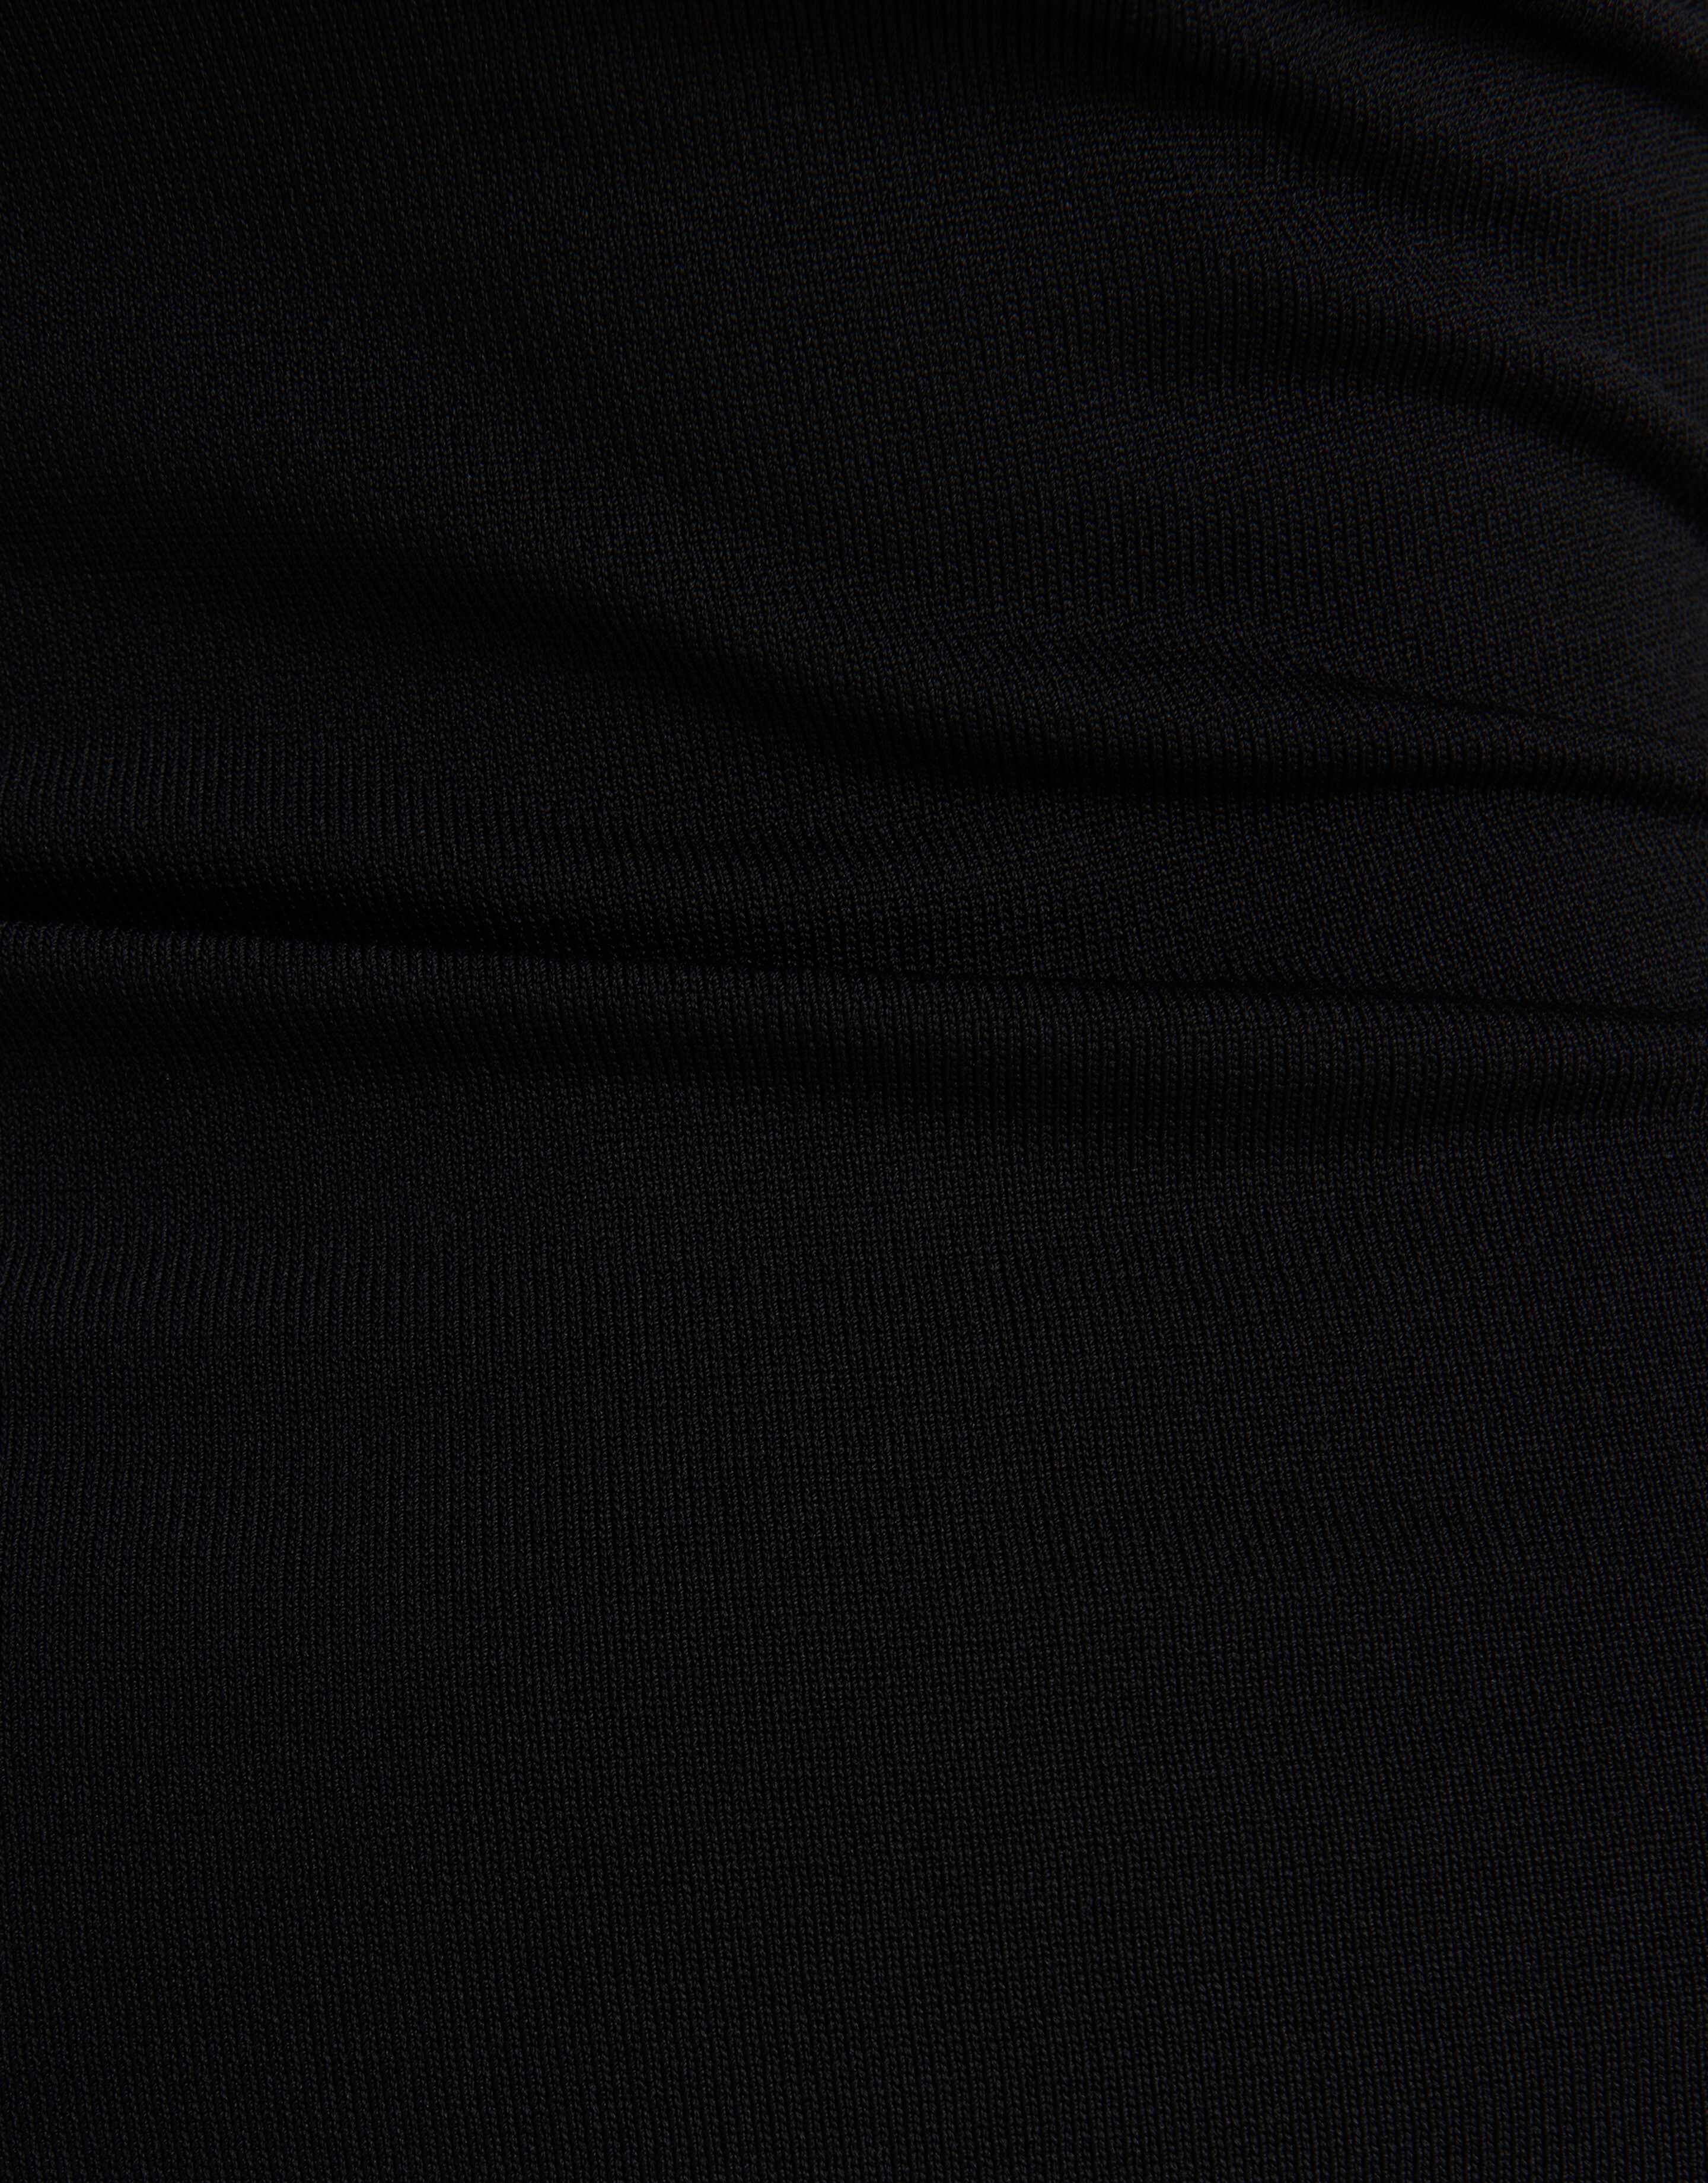 Asymmetrisches ausgeschnittenes Kleid Schwarz SHOEBY WOMEN